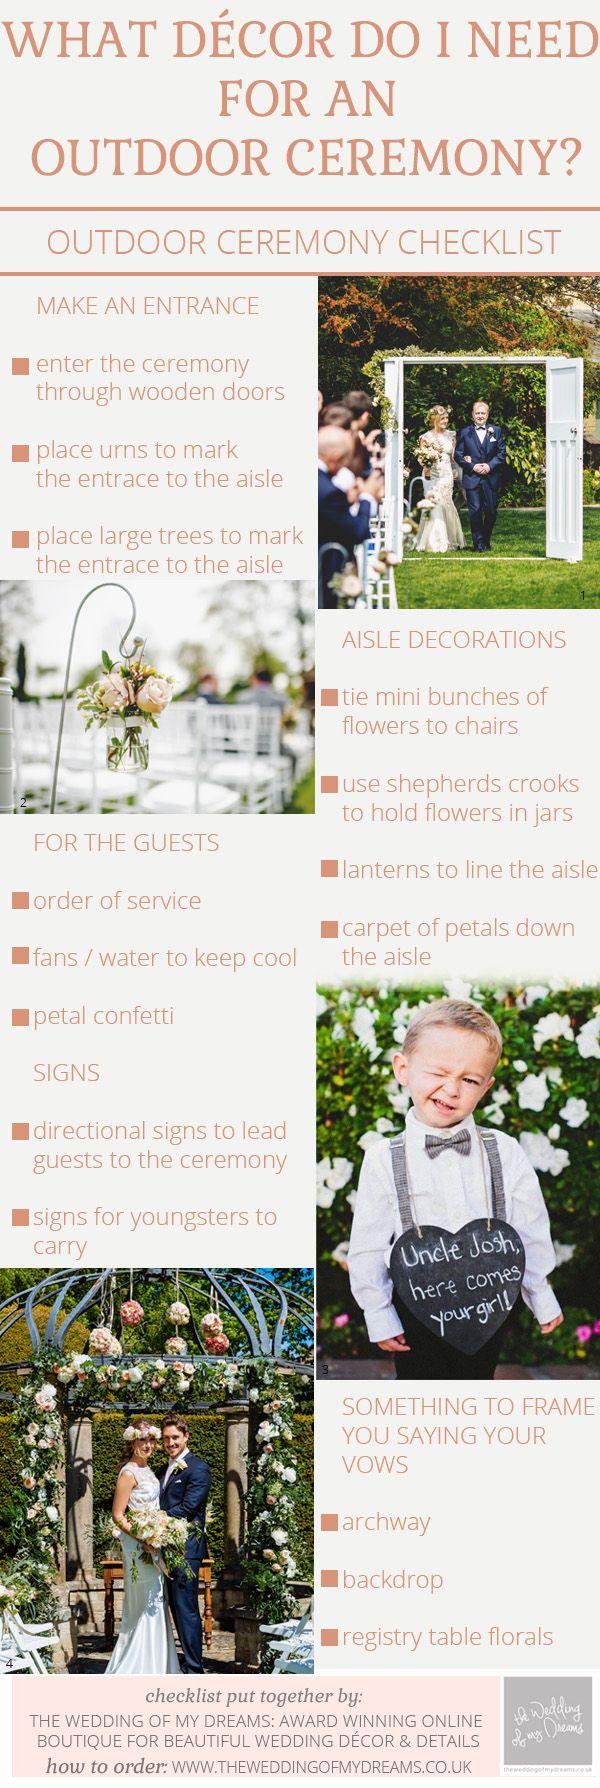 Hochzeit - Outdoor Wedding Ceremony Decorations – Checklist